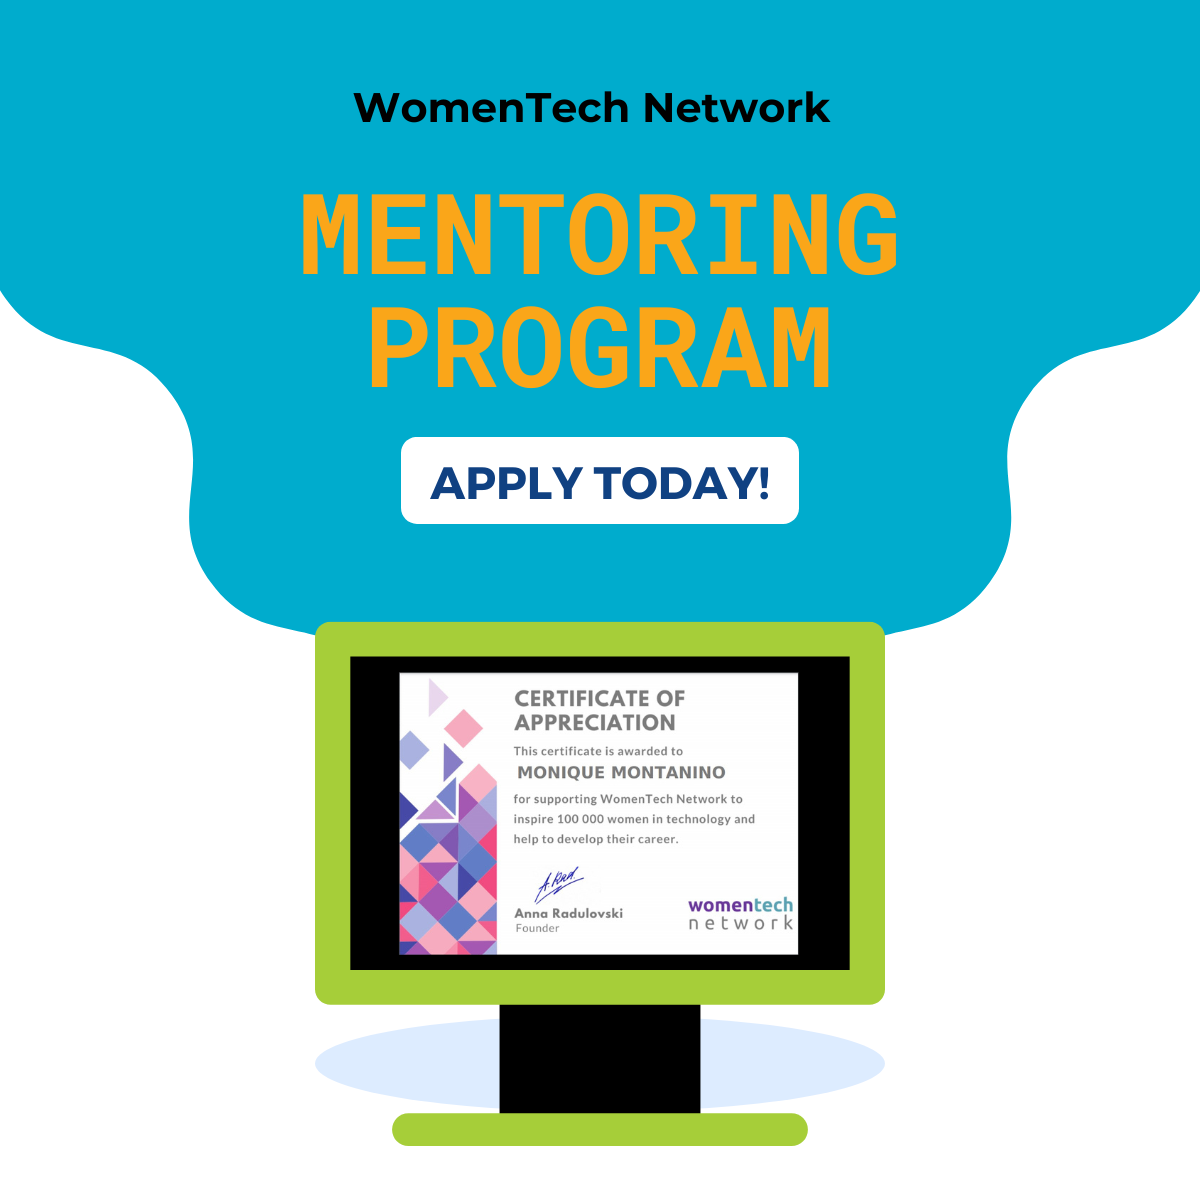 Mentoring program announcement for WomenTech Network